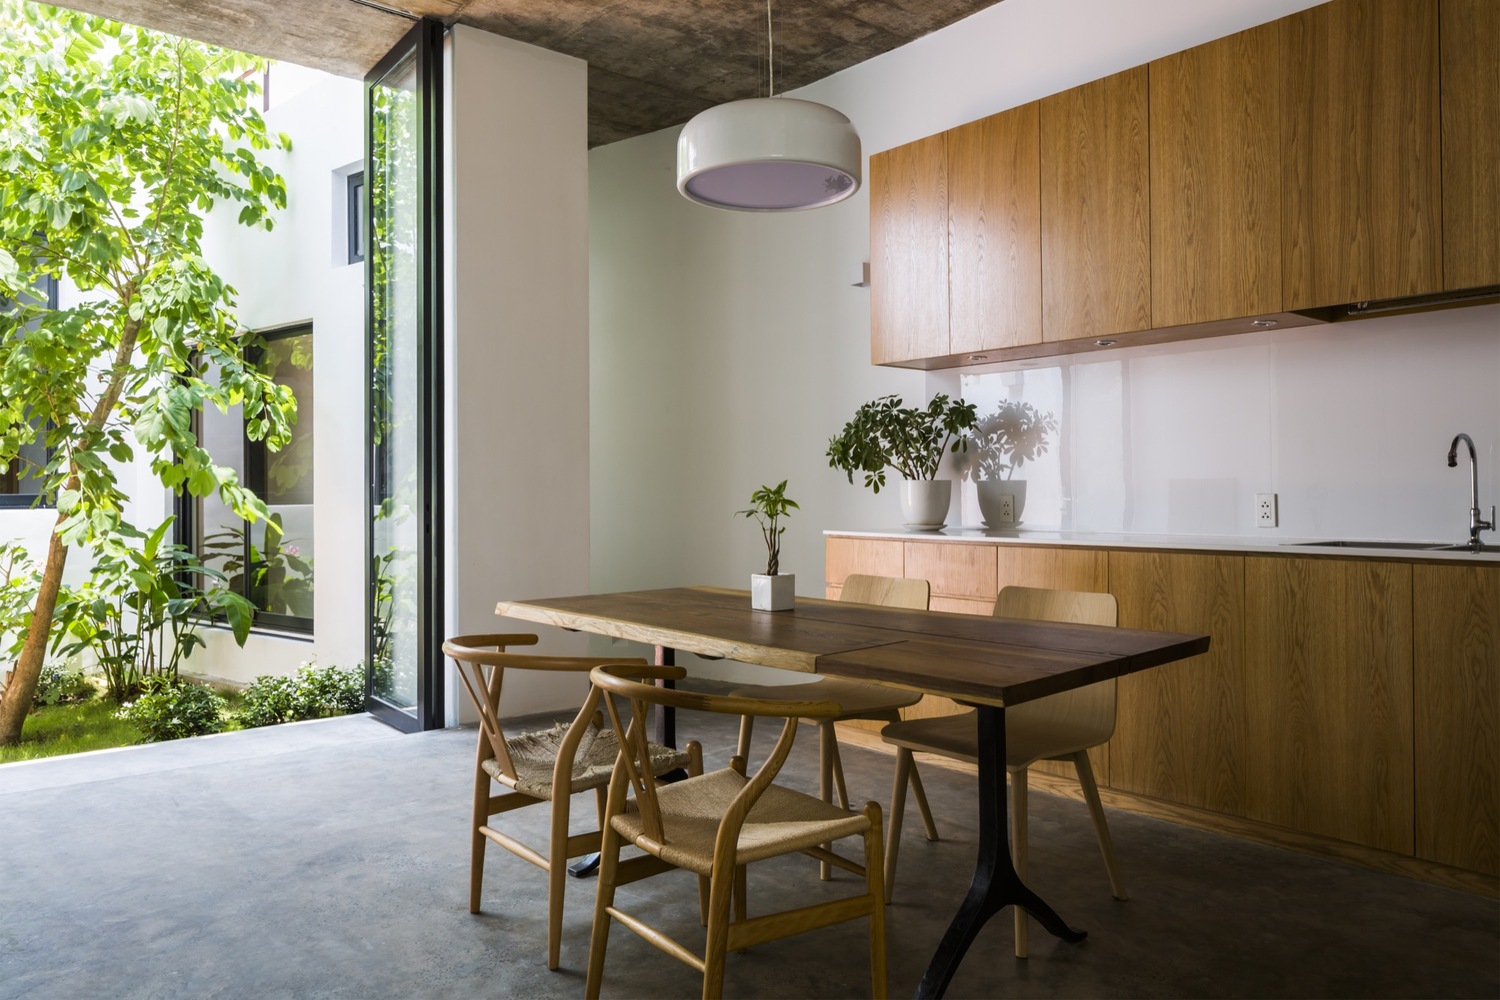 Hình ảnh một góc phòng bếp đơn giản với bàn ăn và tủ bếp bằng gỗ, cửa kính lớn mở ra bên ngoài